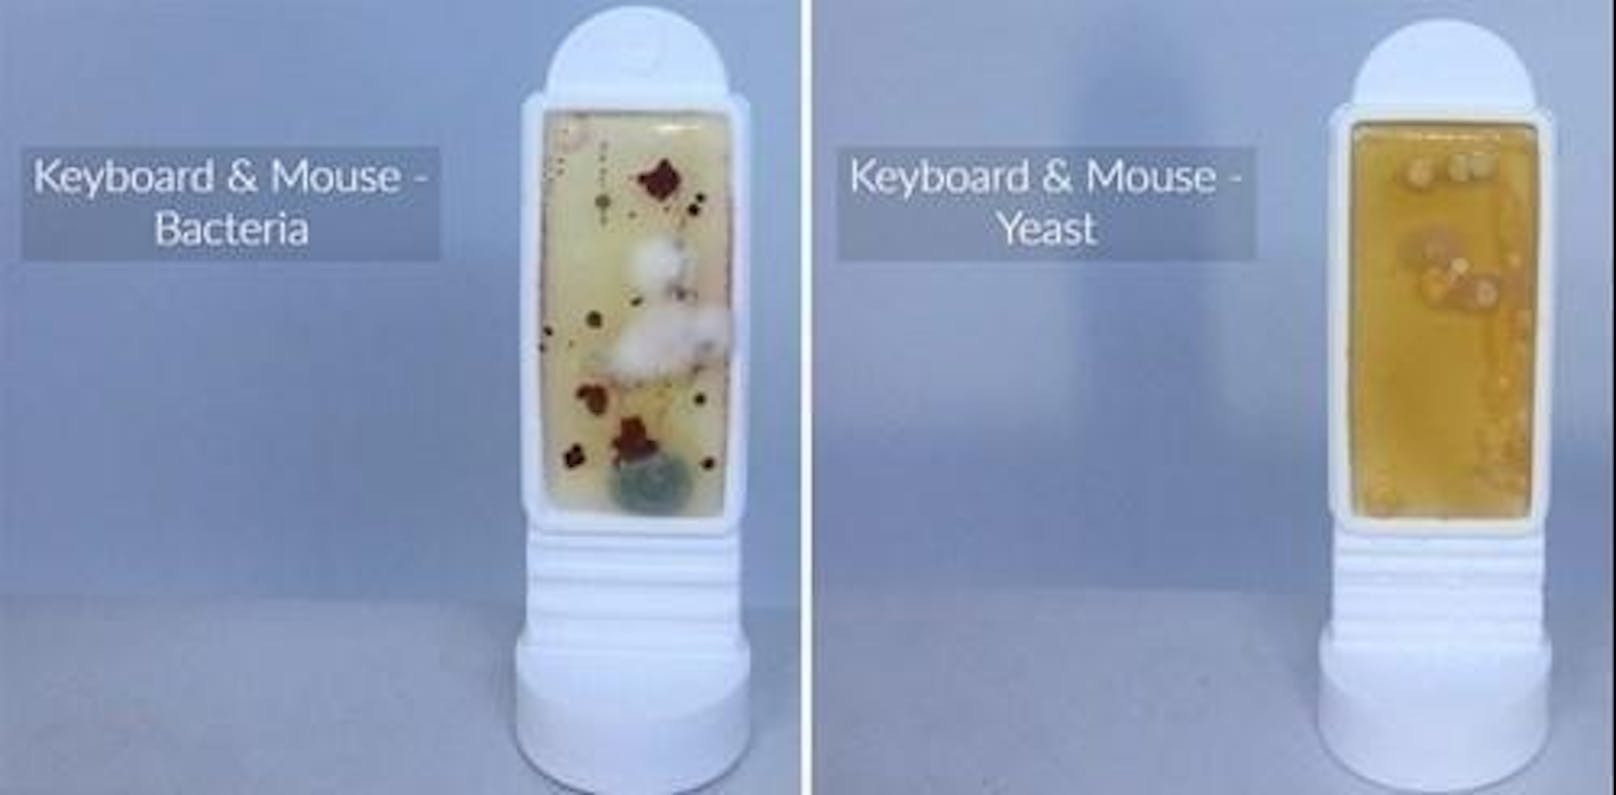 Zum Vergleich: der Bakterien-Abstrich (l.) und der Hefepilz-Abstrich von Keyboard und Maus eines PCs